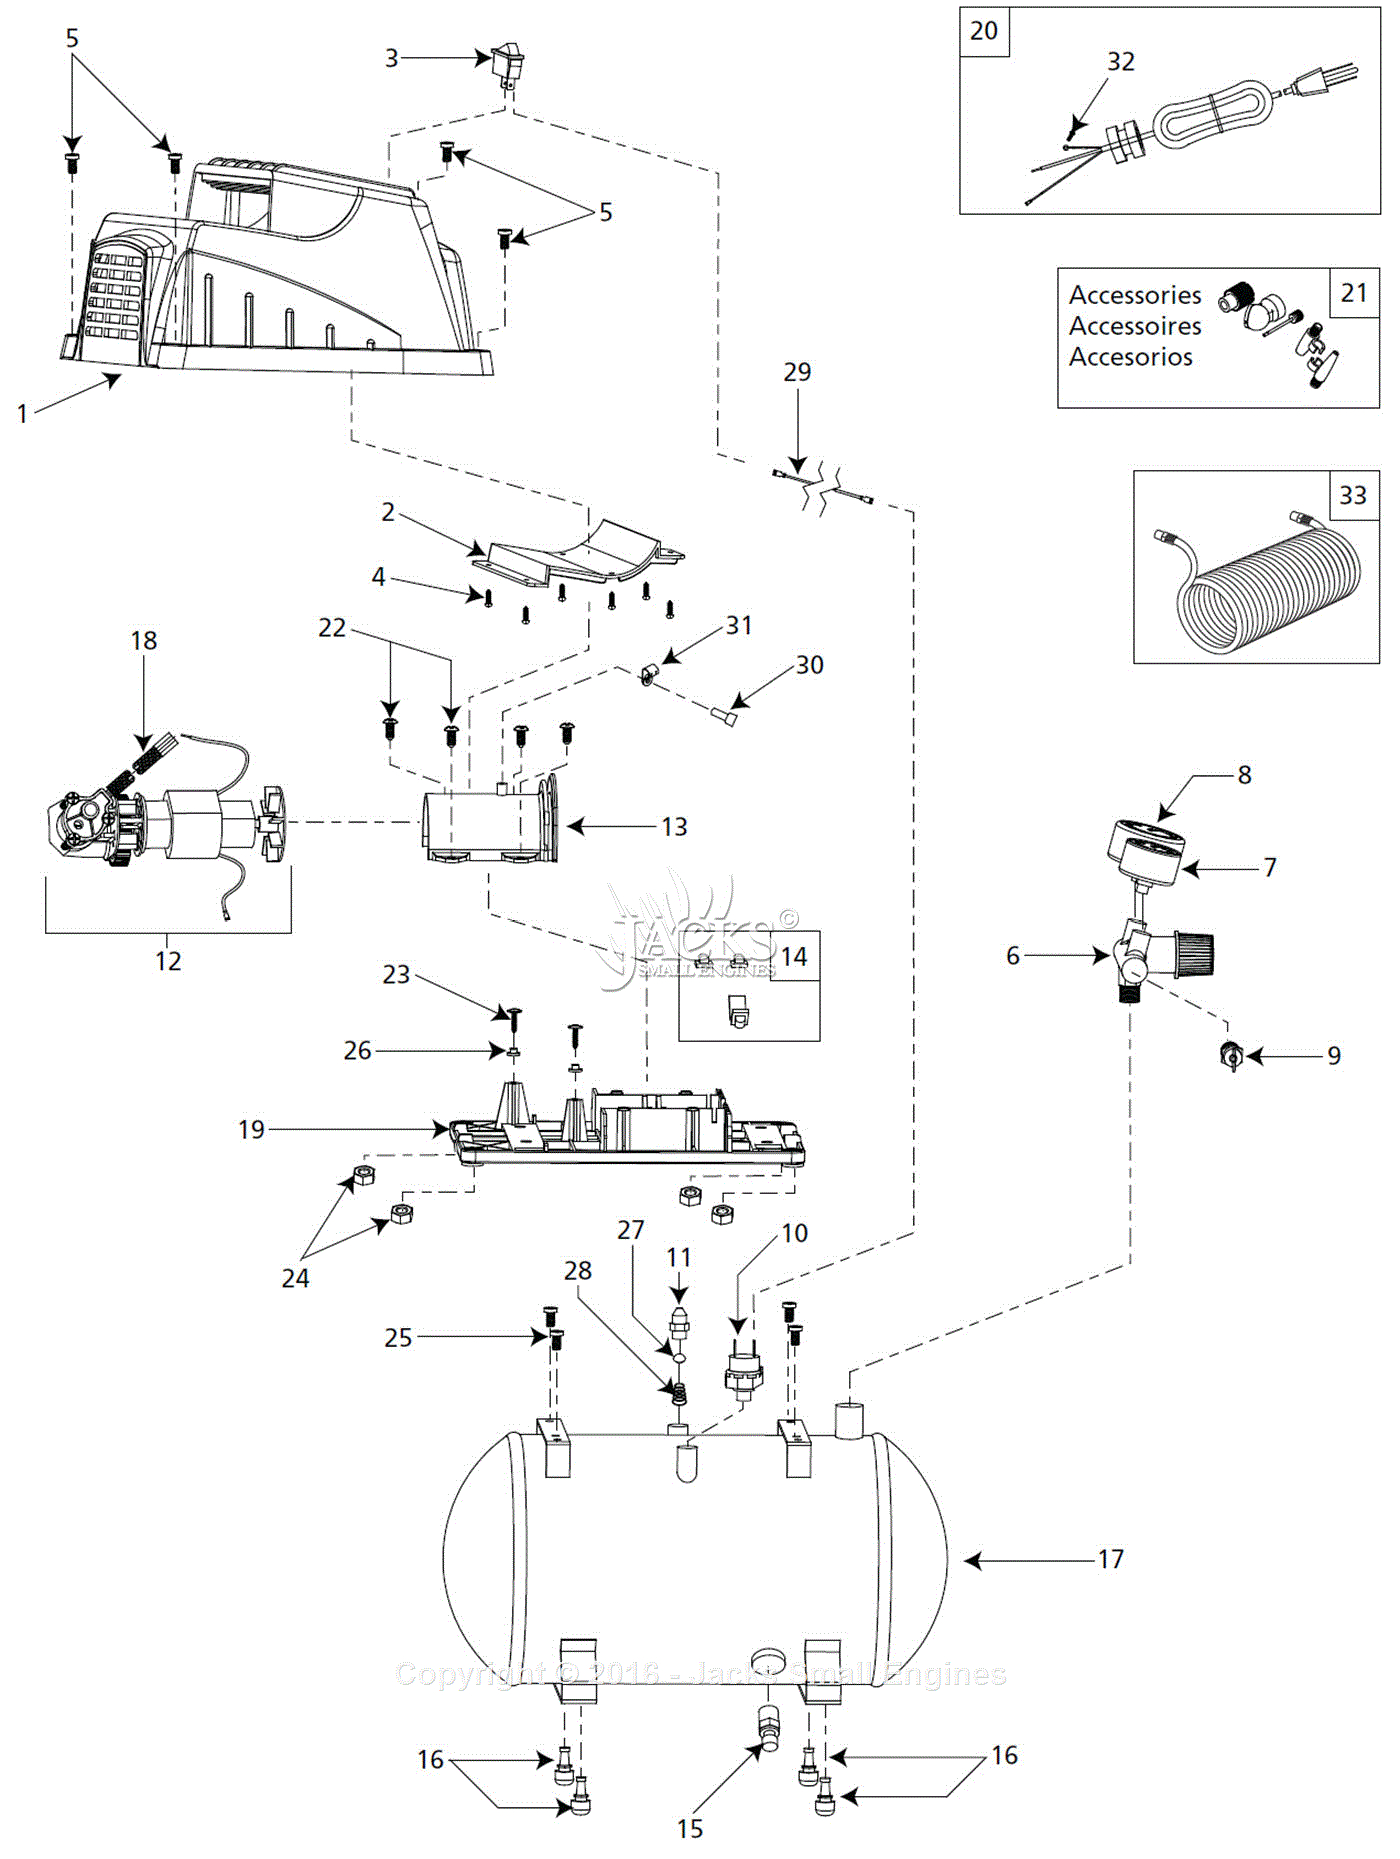 Campbell Hausfeld Air Compressor Parts Diagram Campbell Hausfeld Fp209402 Parts Diagram For Air Compressor Parts